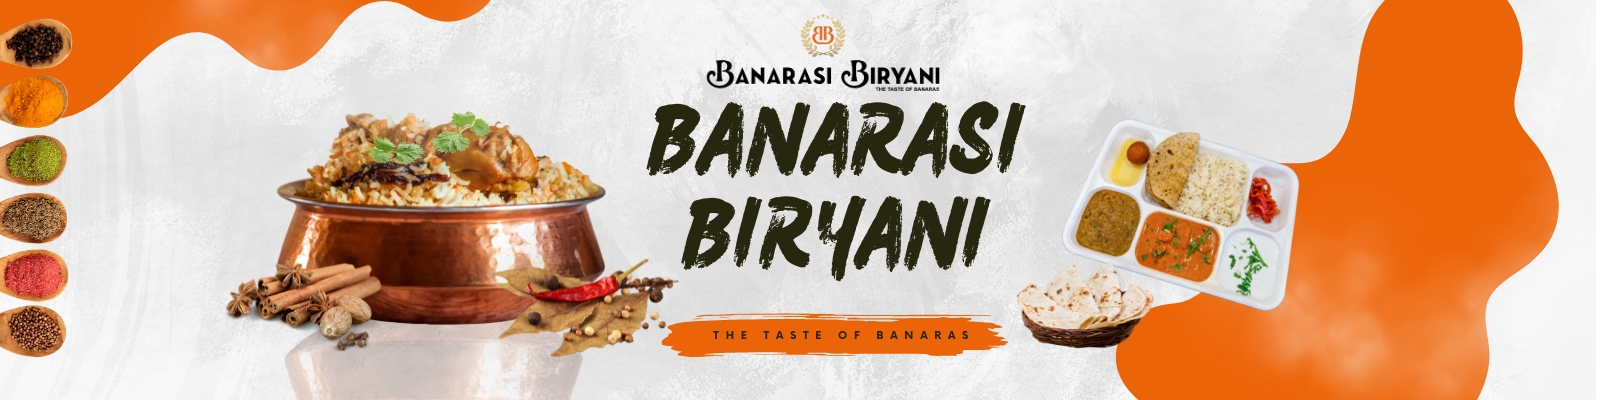 Banarasi Biryani